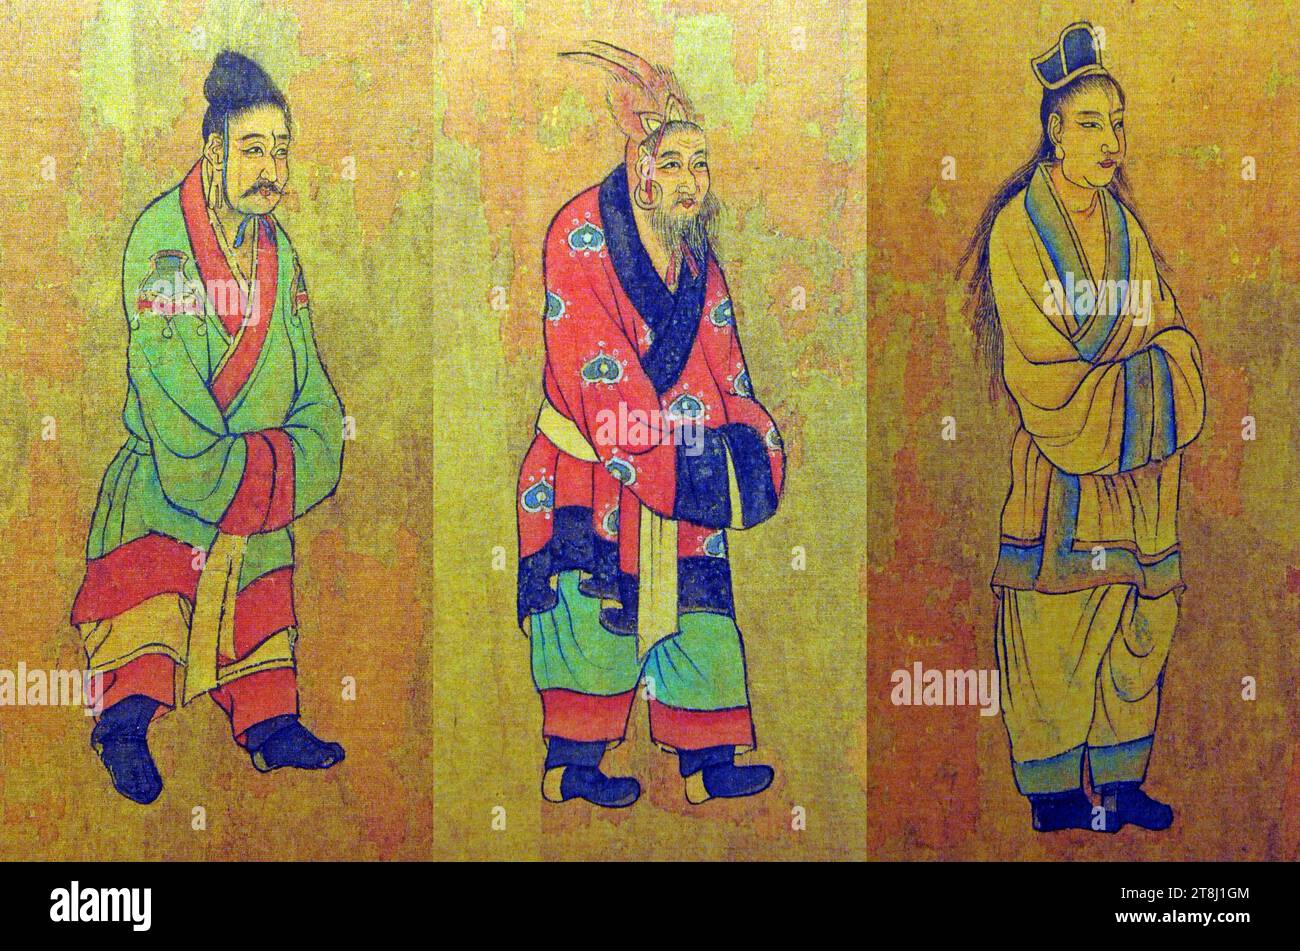 Peinture de la dynastie Tang du 7e siècle des envoyés des trois Royaumes de Corée : Baekje, Goguryeo et Silla, par Yan Liben Banque D'Images